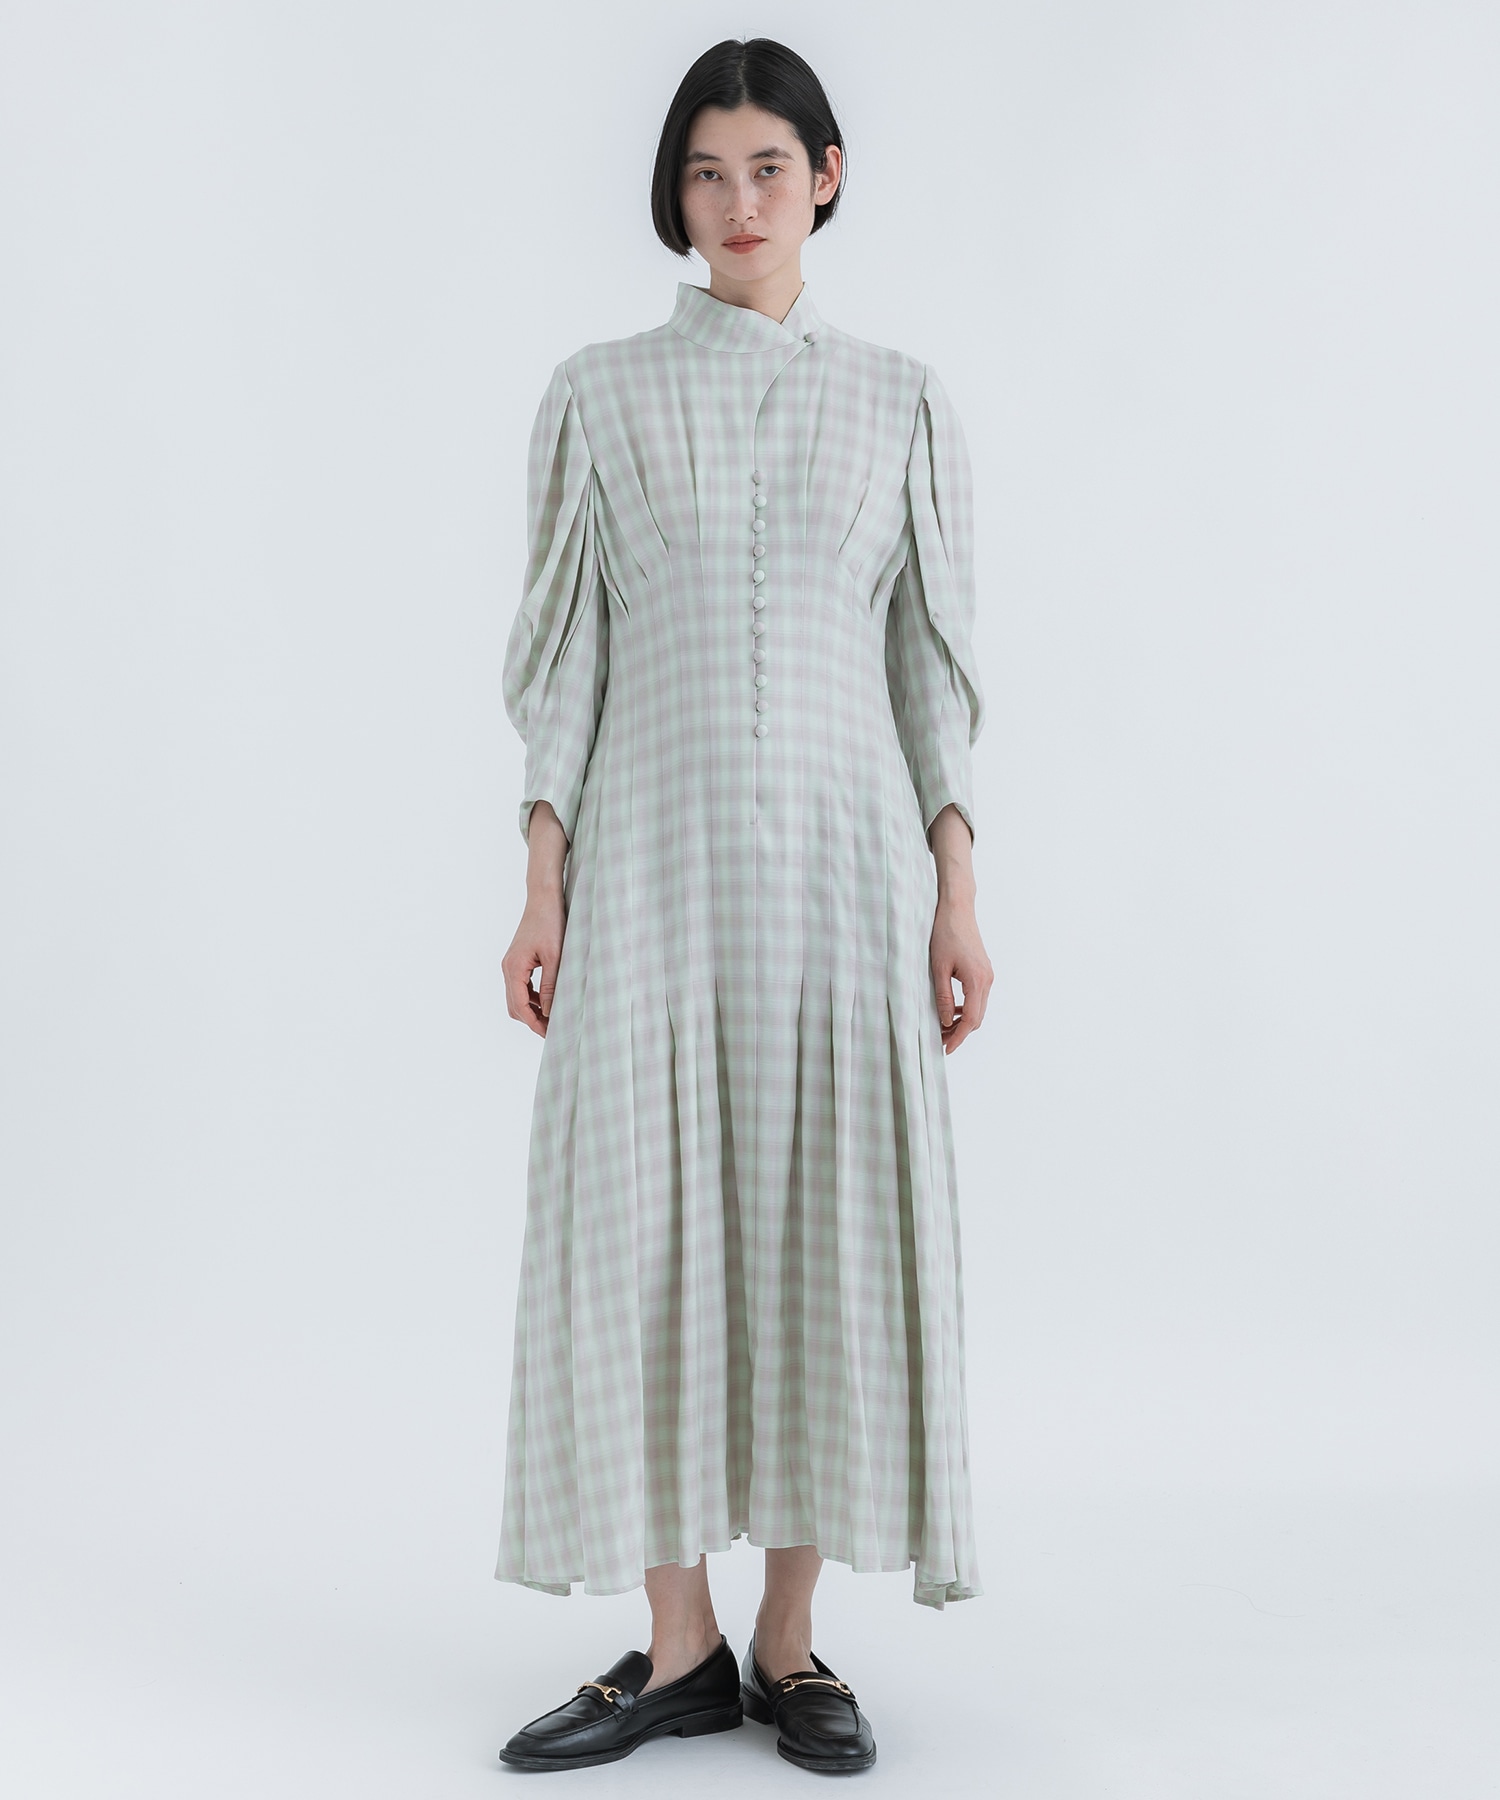 Random Ribbed Organic Cotton 2 way Dress(1 WHITE): Mame Kurogouchi 